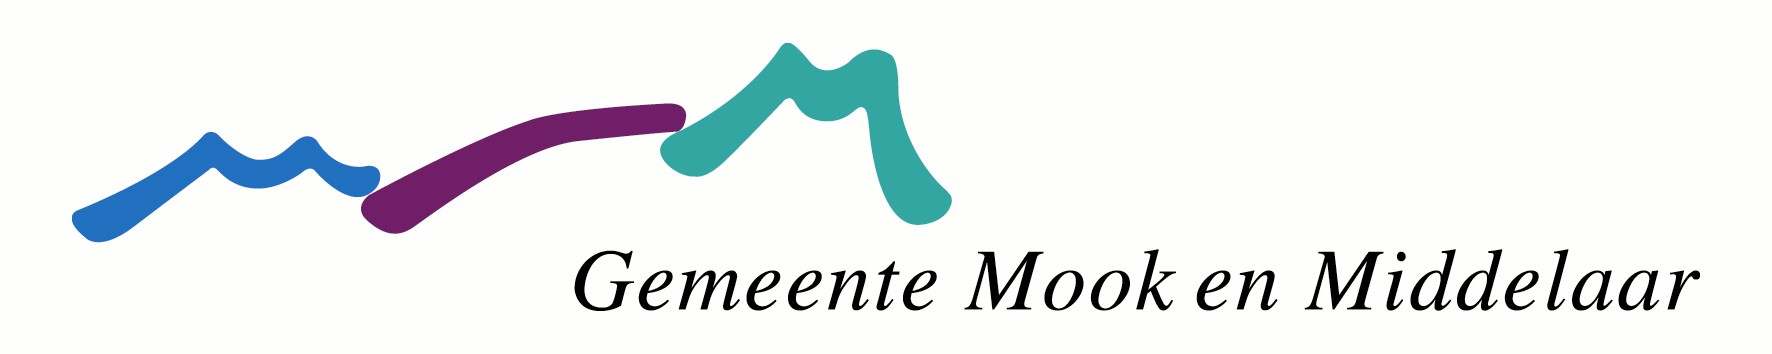 Logo Mook en Middelaar